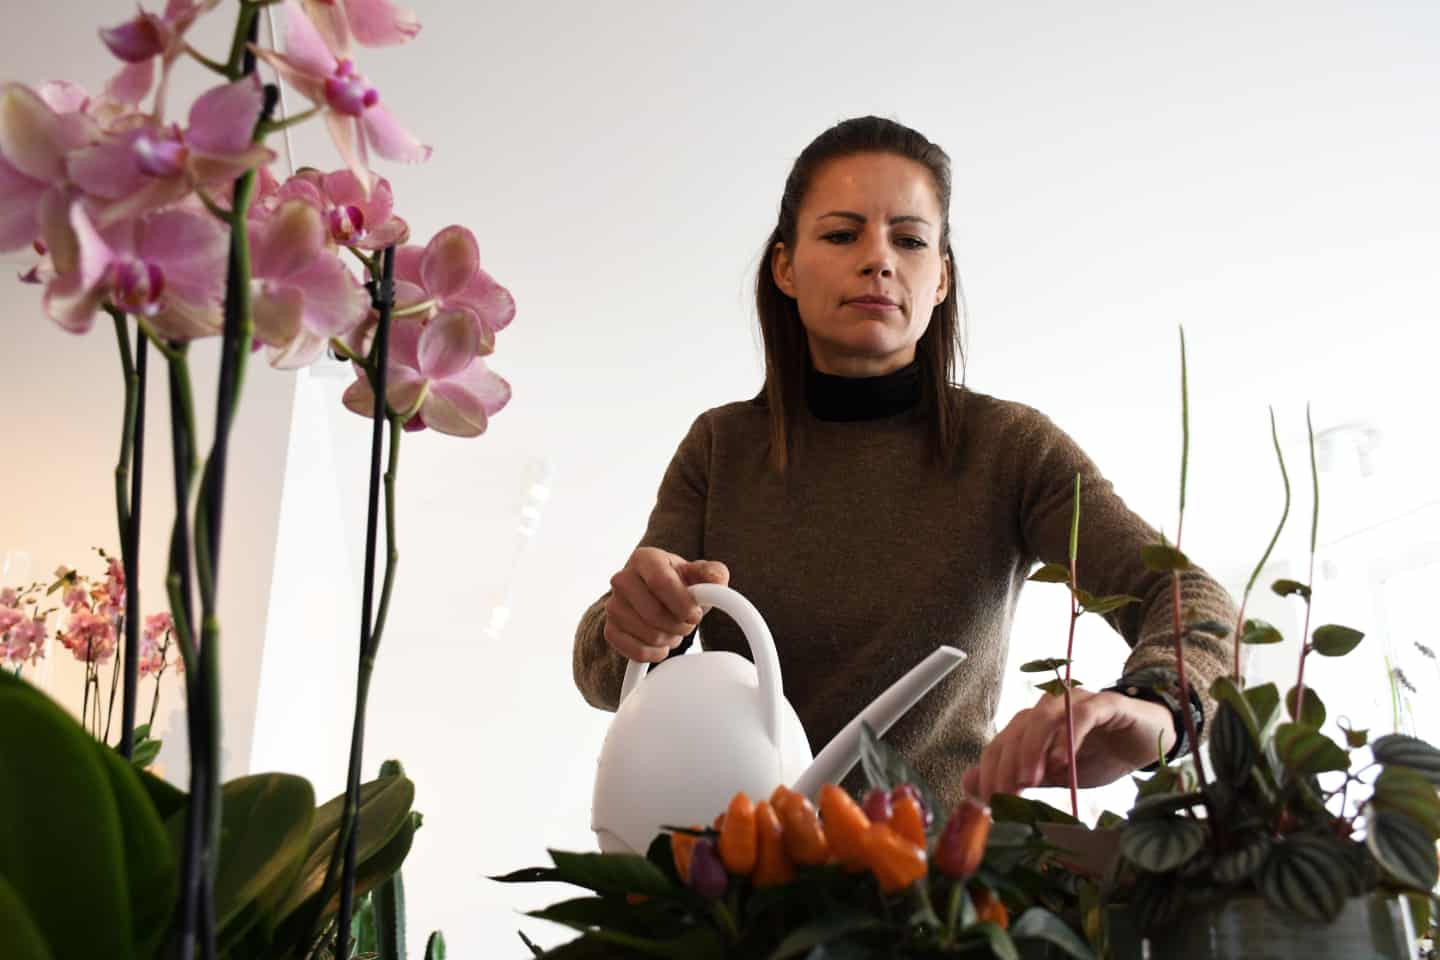 Nu kan du få blomster døgnet rundt: blomsterhandlere har åbent for selvbetjening | jv.dk